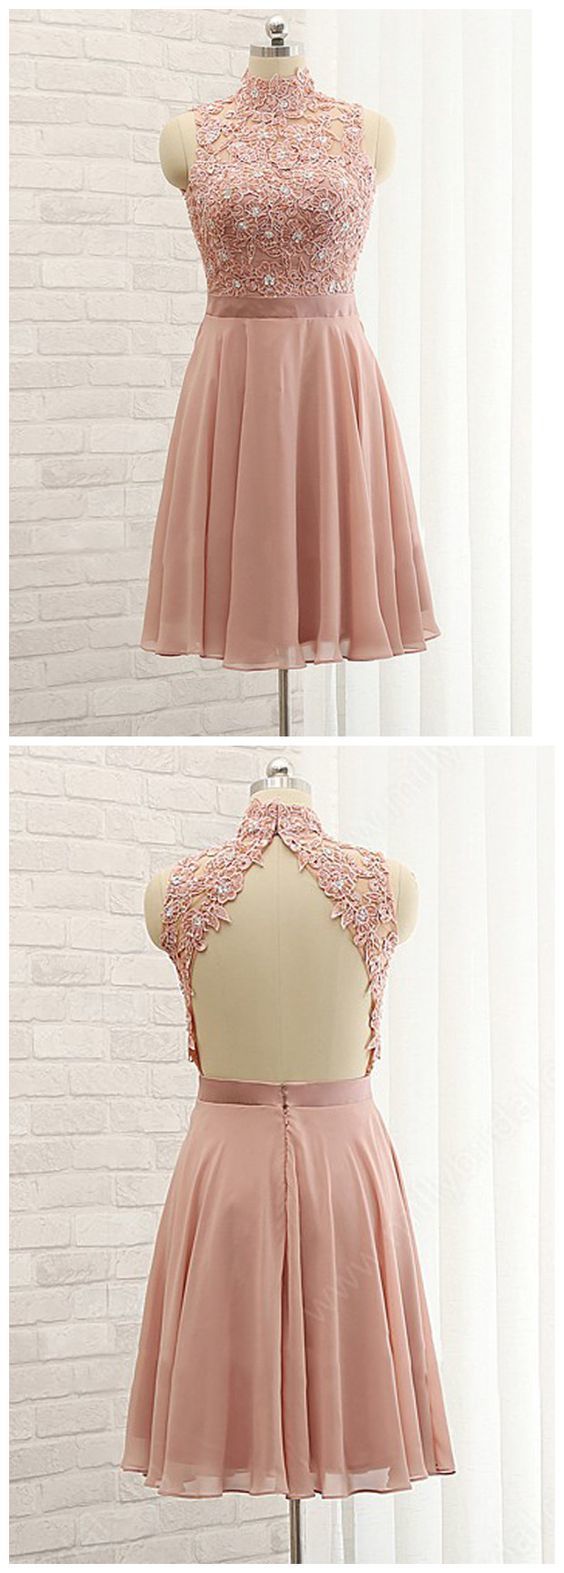 A-line High Neck Short Dress Pink Lace Short Dresses Cheap Homecoming Dress cg1224